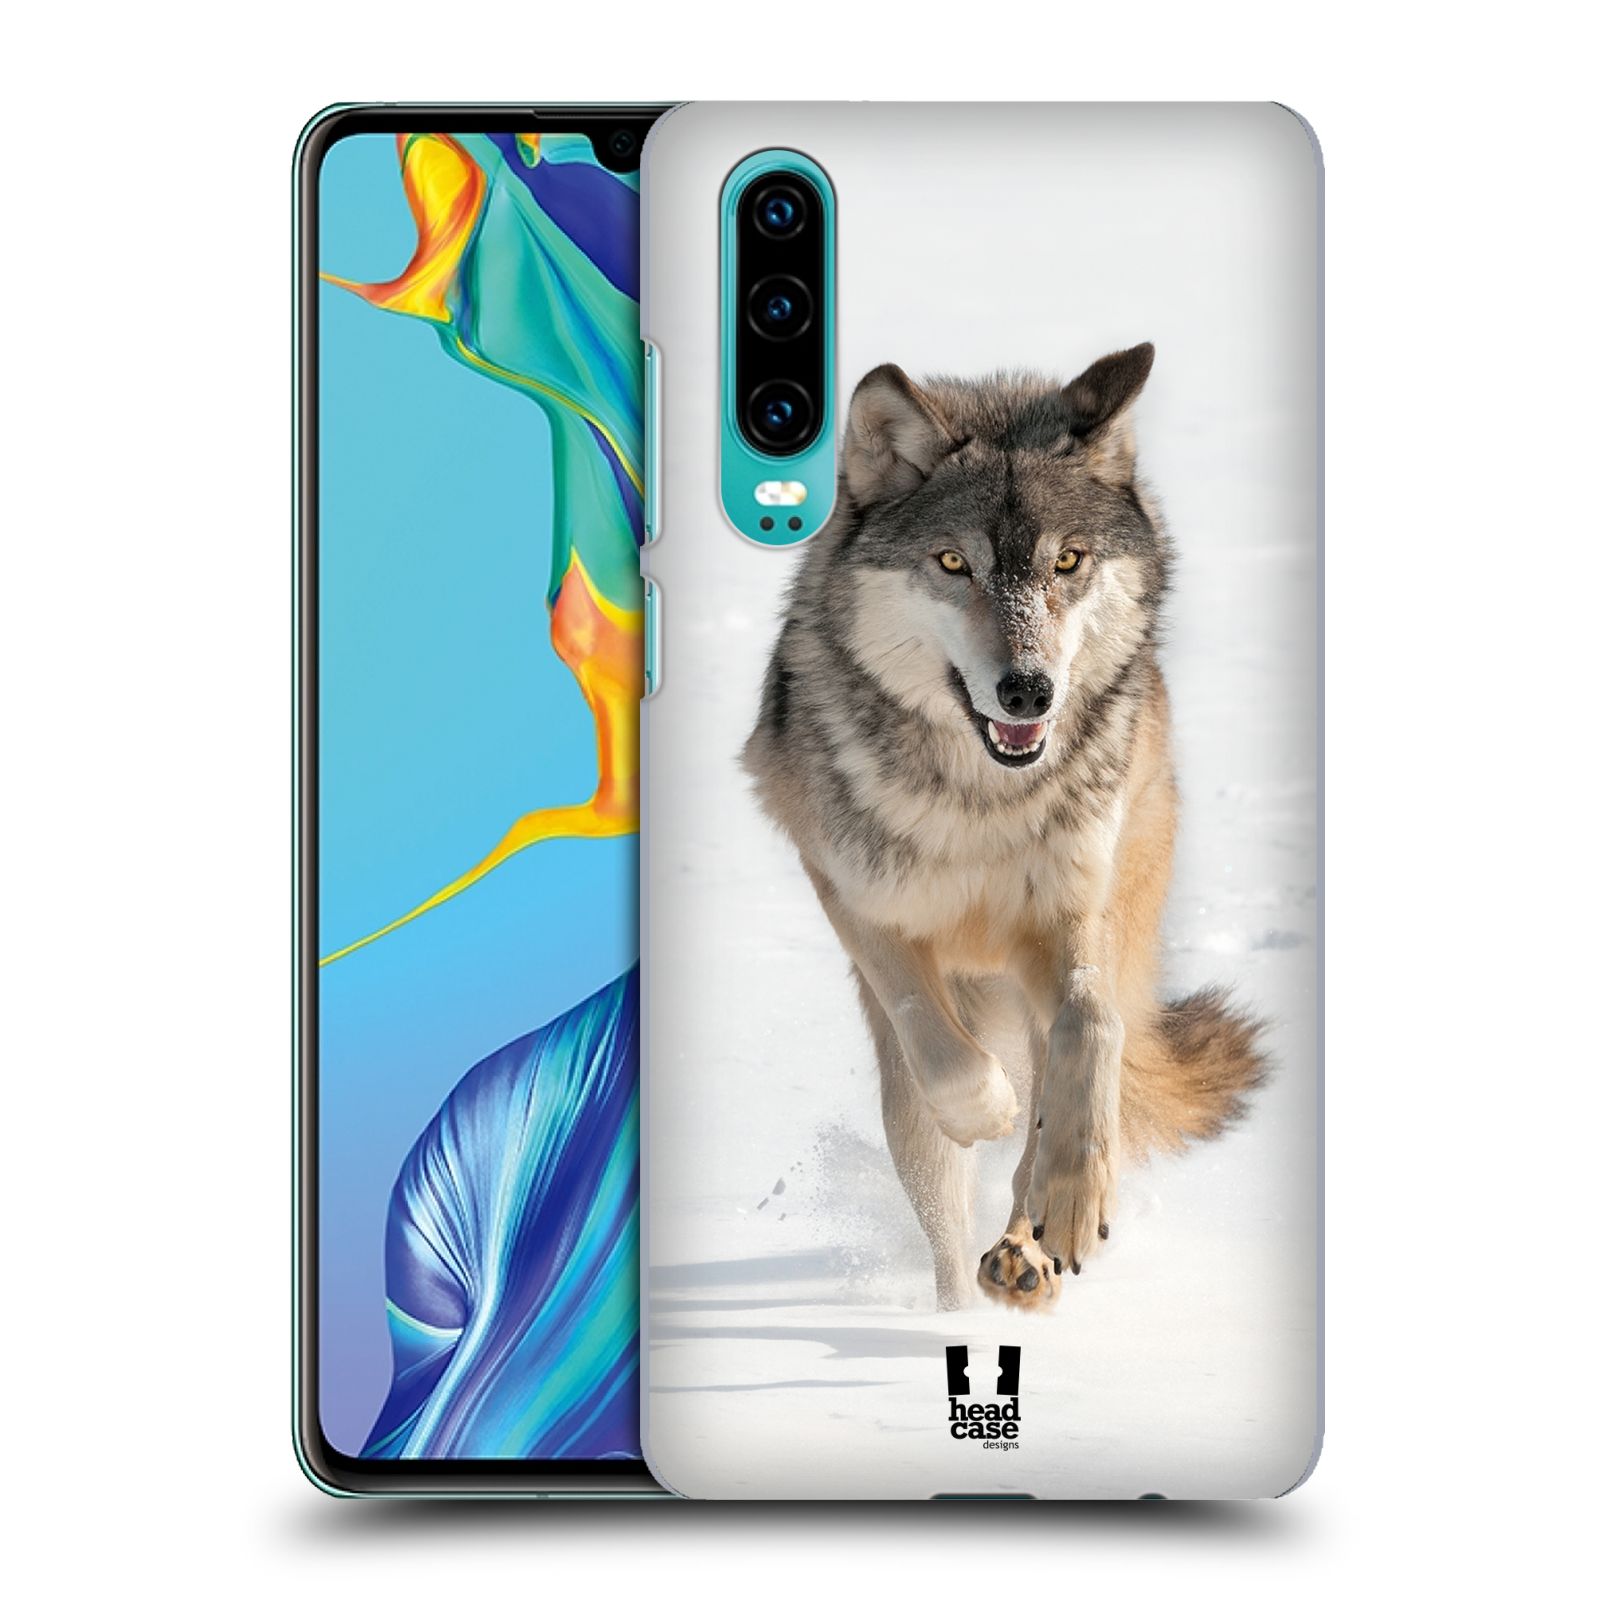 Zadní obal pro mobil Huawei P30 - HEAD CASE - Svět zvířat divoký vlk